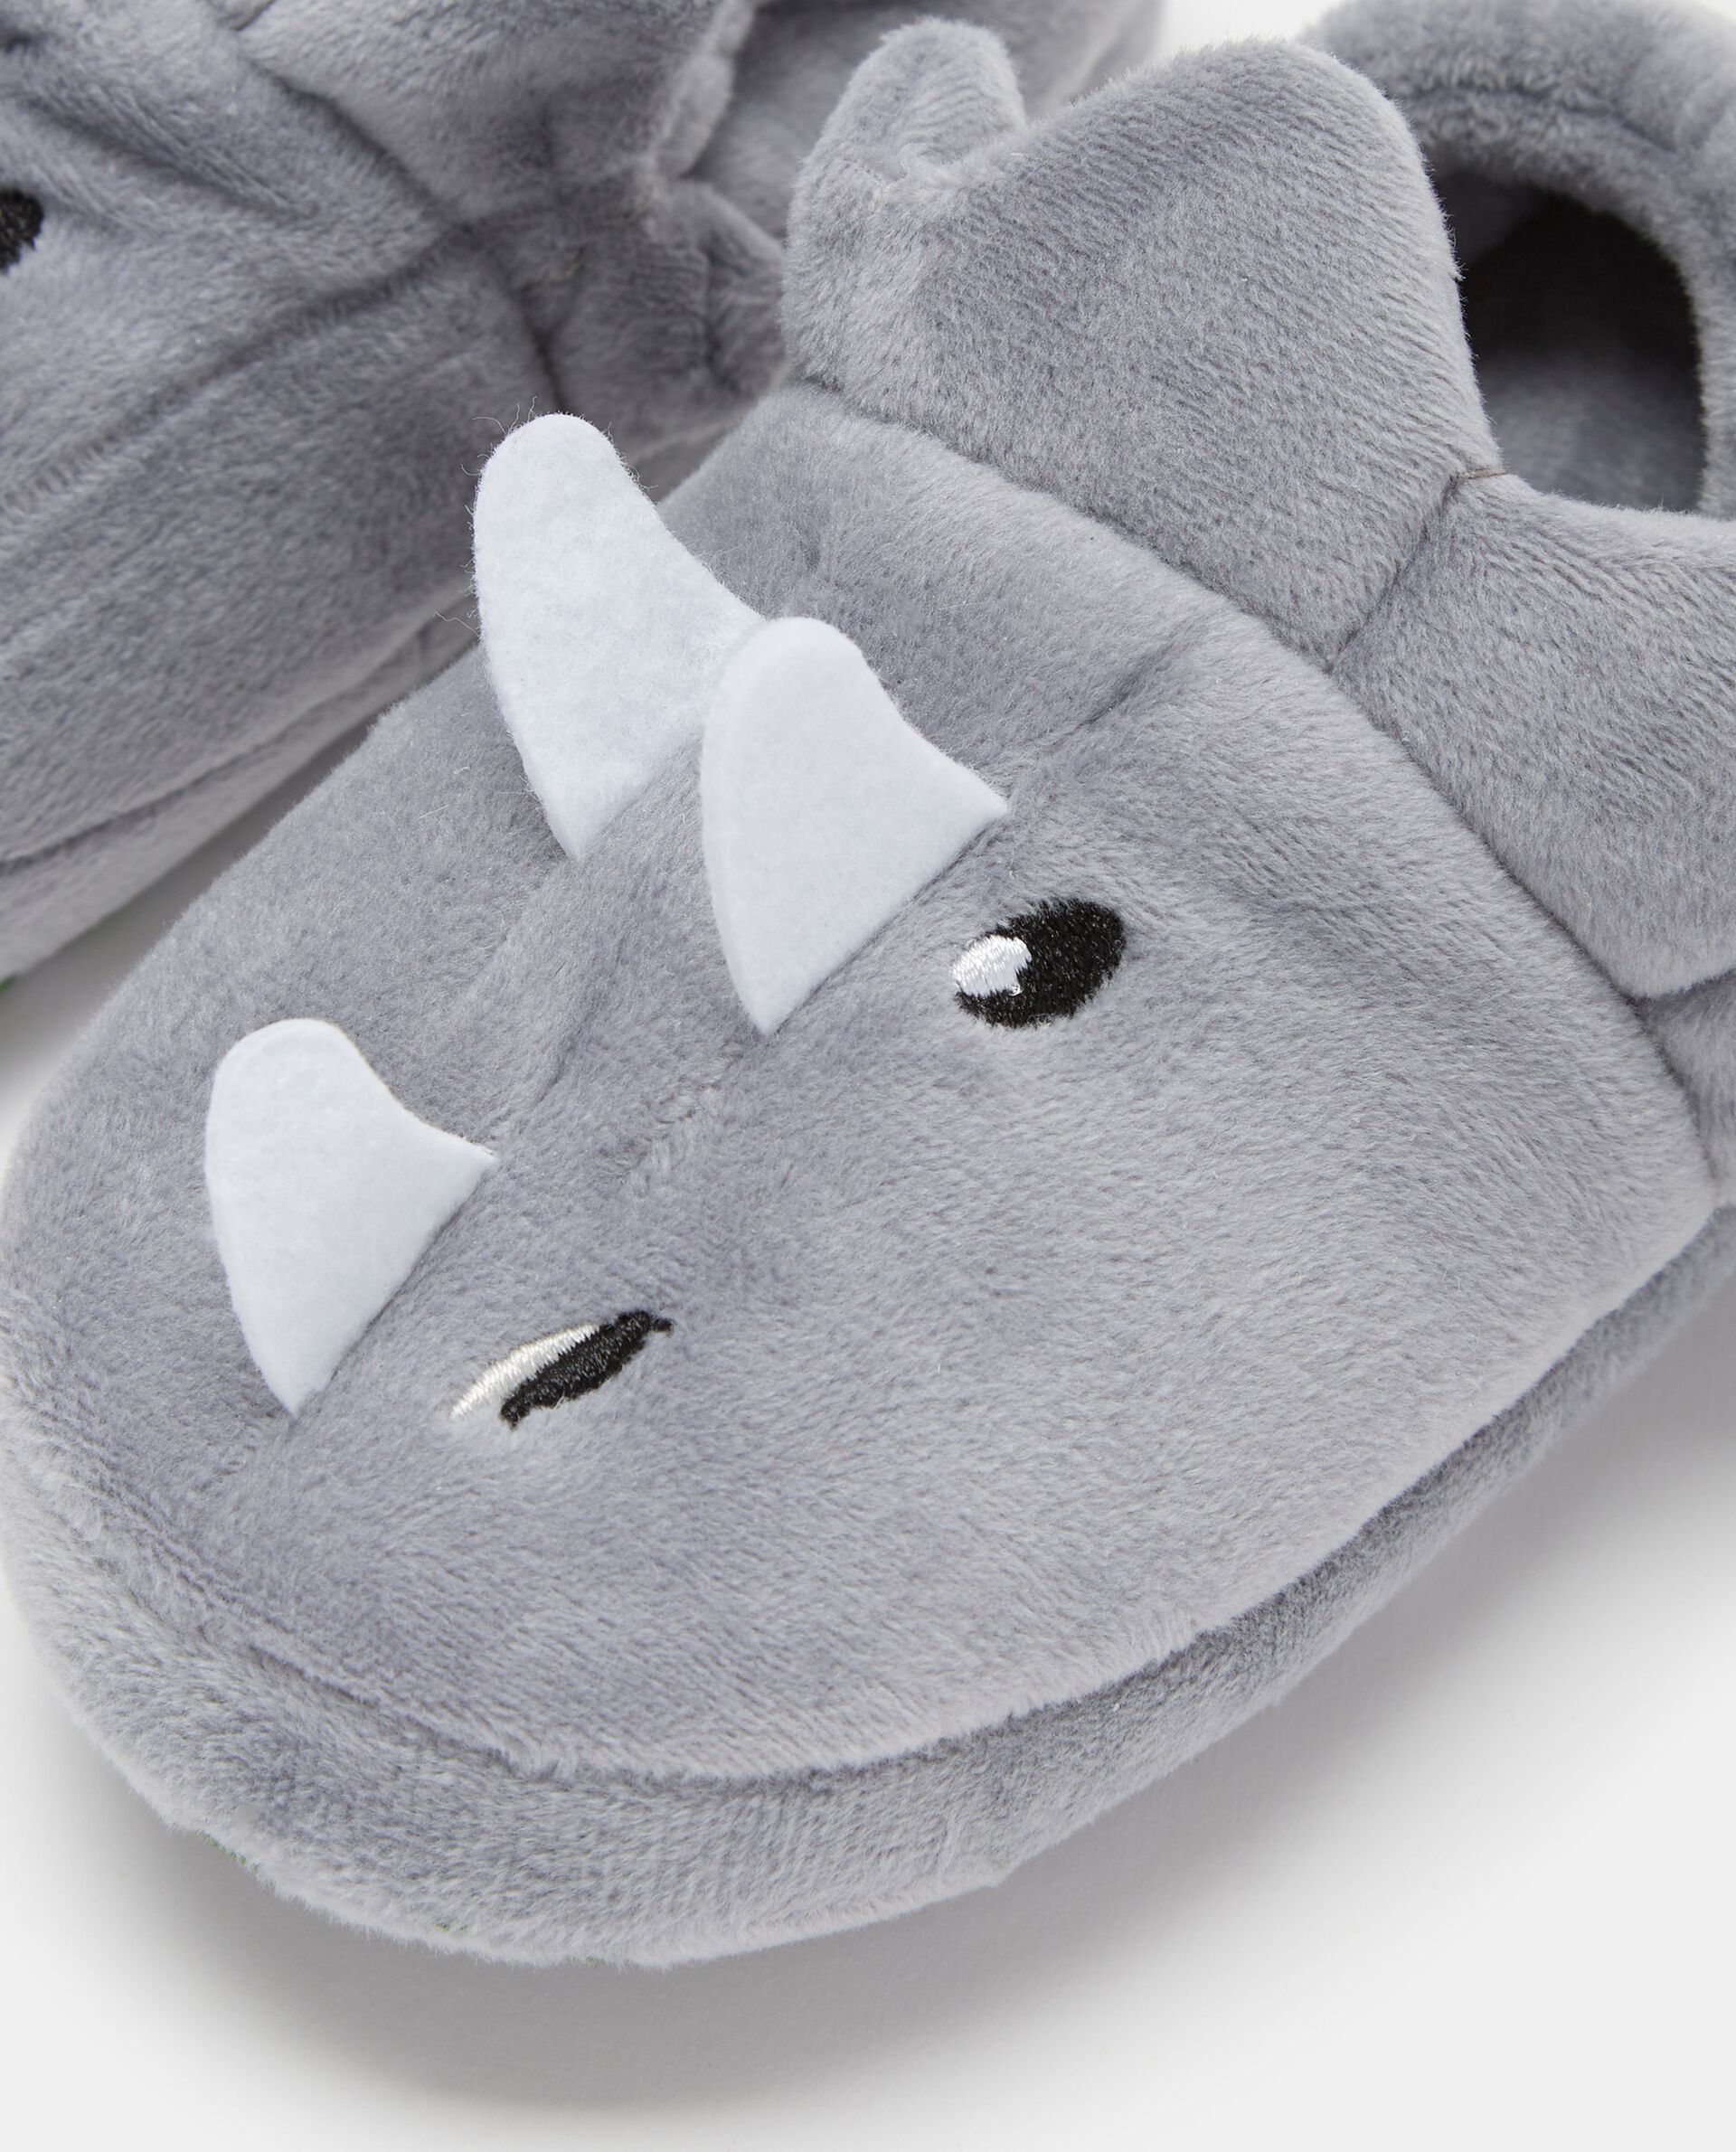 Pantofole chiuse a forma di rinoceronte neonato